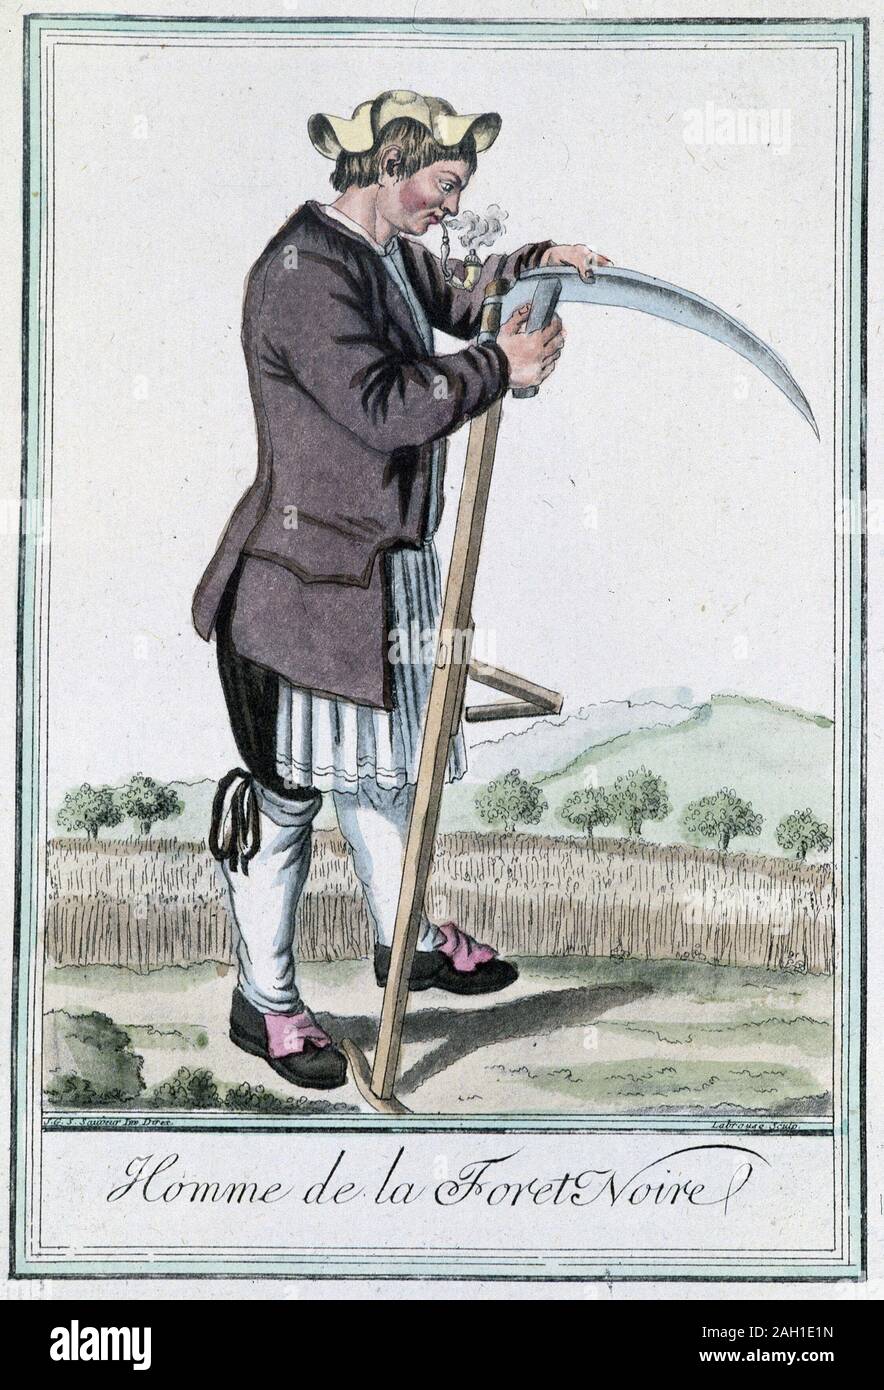 Homme de la fort noire, aiguisant sa faux pour la moisson - in'Encyclopedie des voyages' par Grasset St Sauveur, ed. Deroy, Paris, 1796 Stock Photo